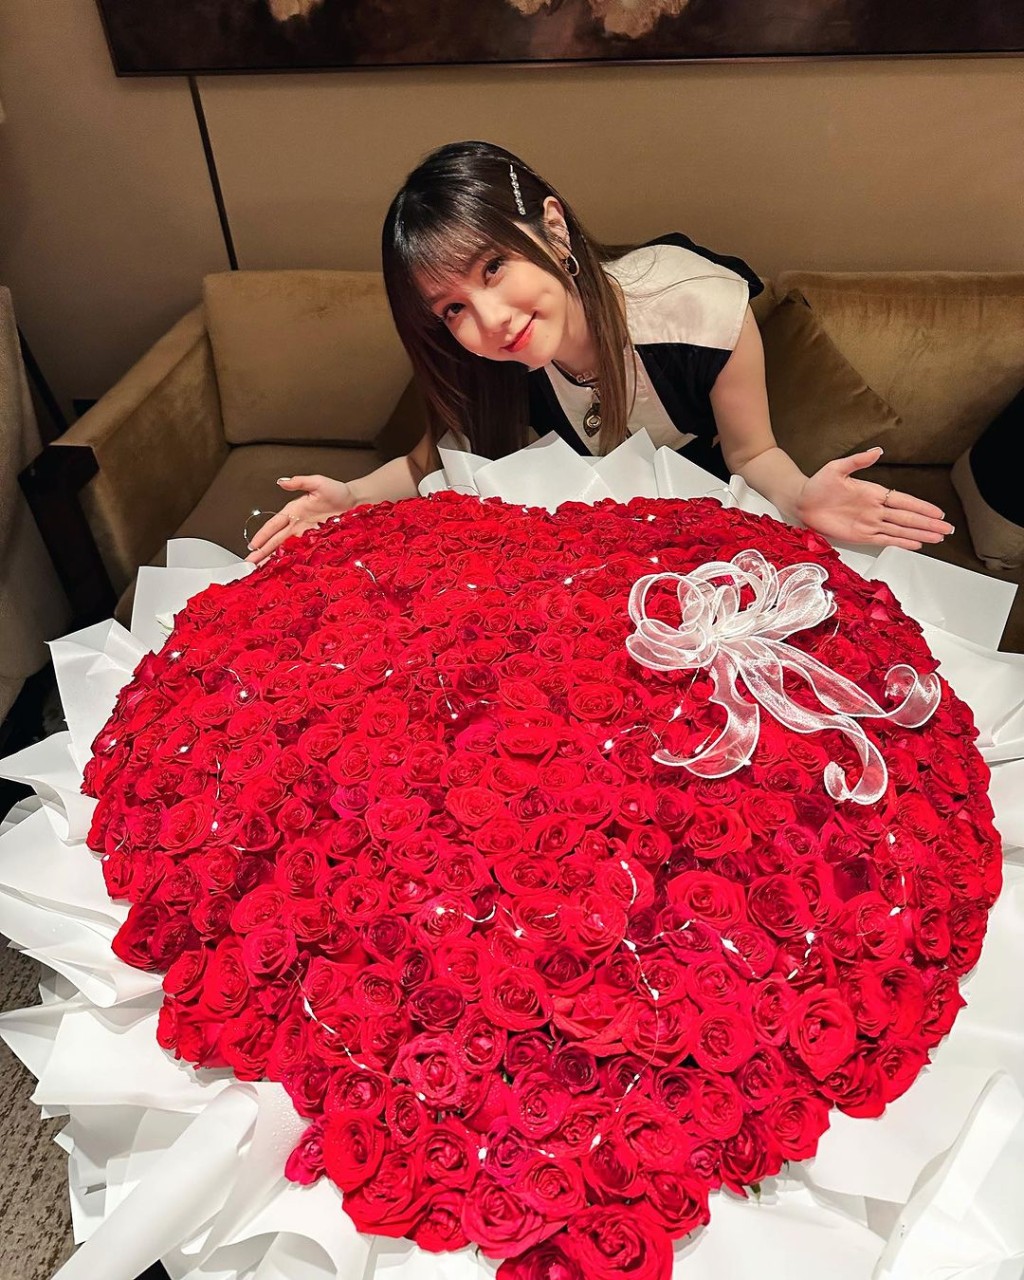 邓紫棋生日收到大束红玫瑰。